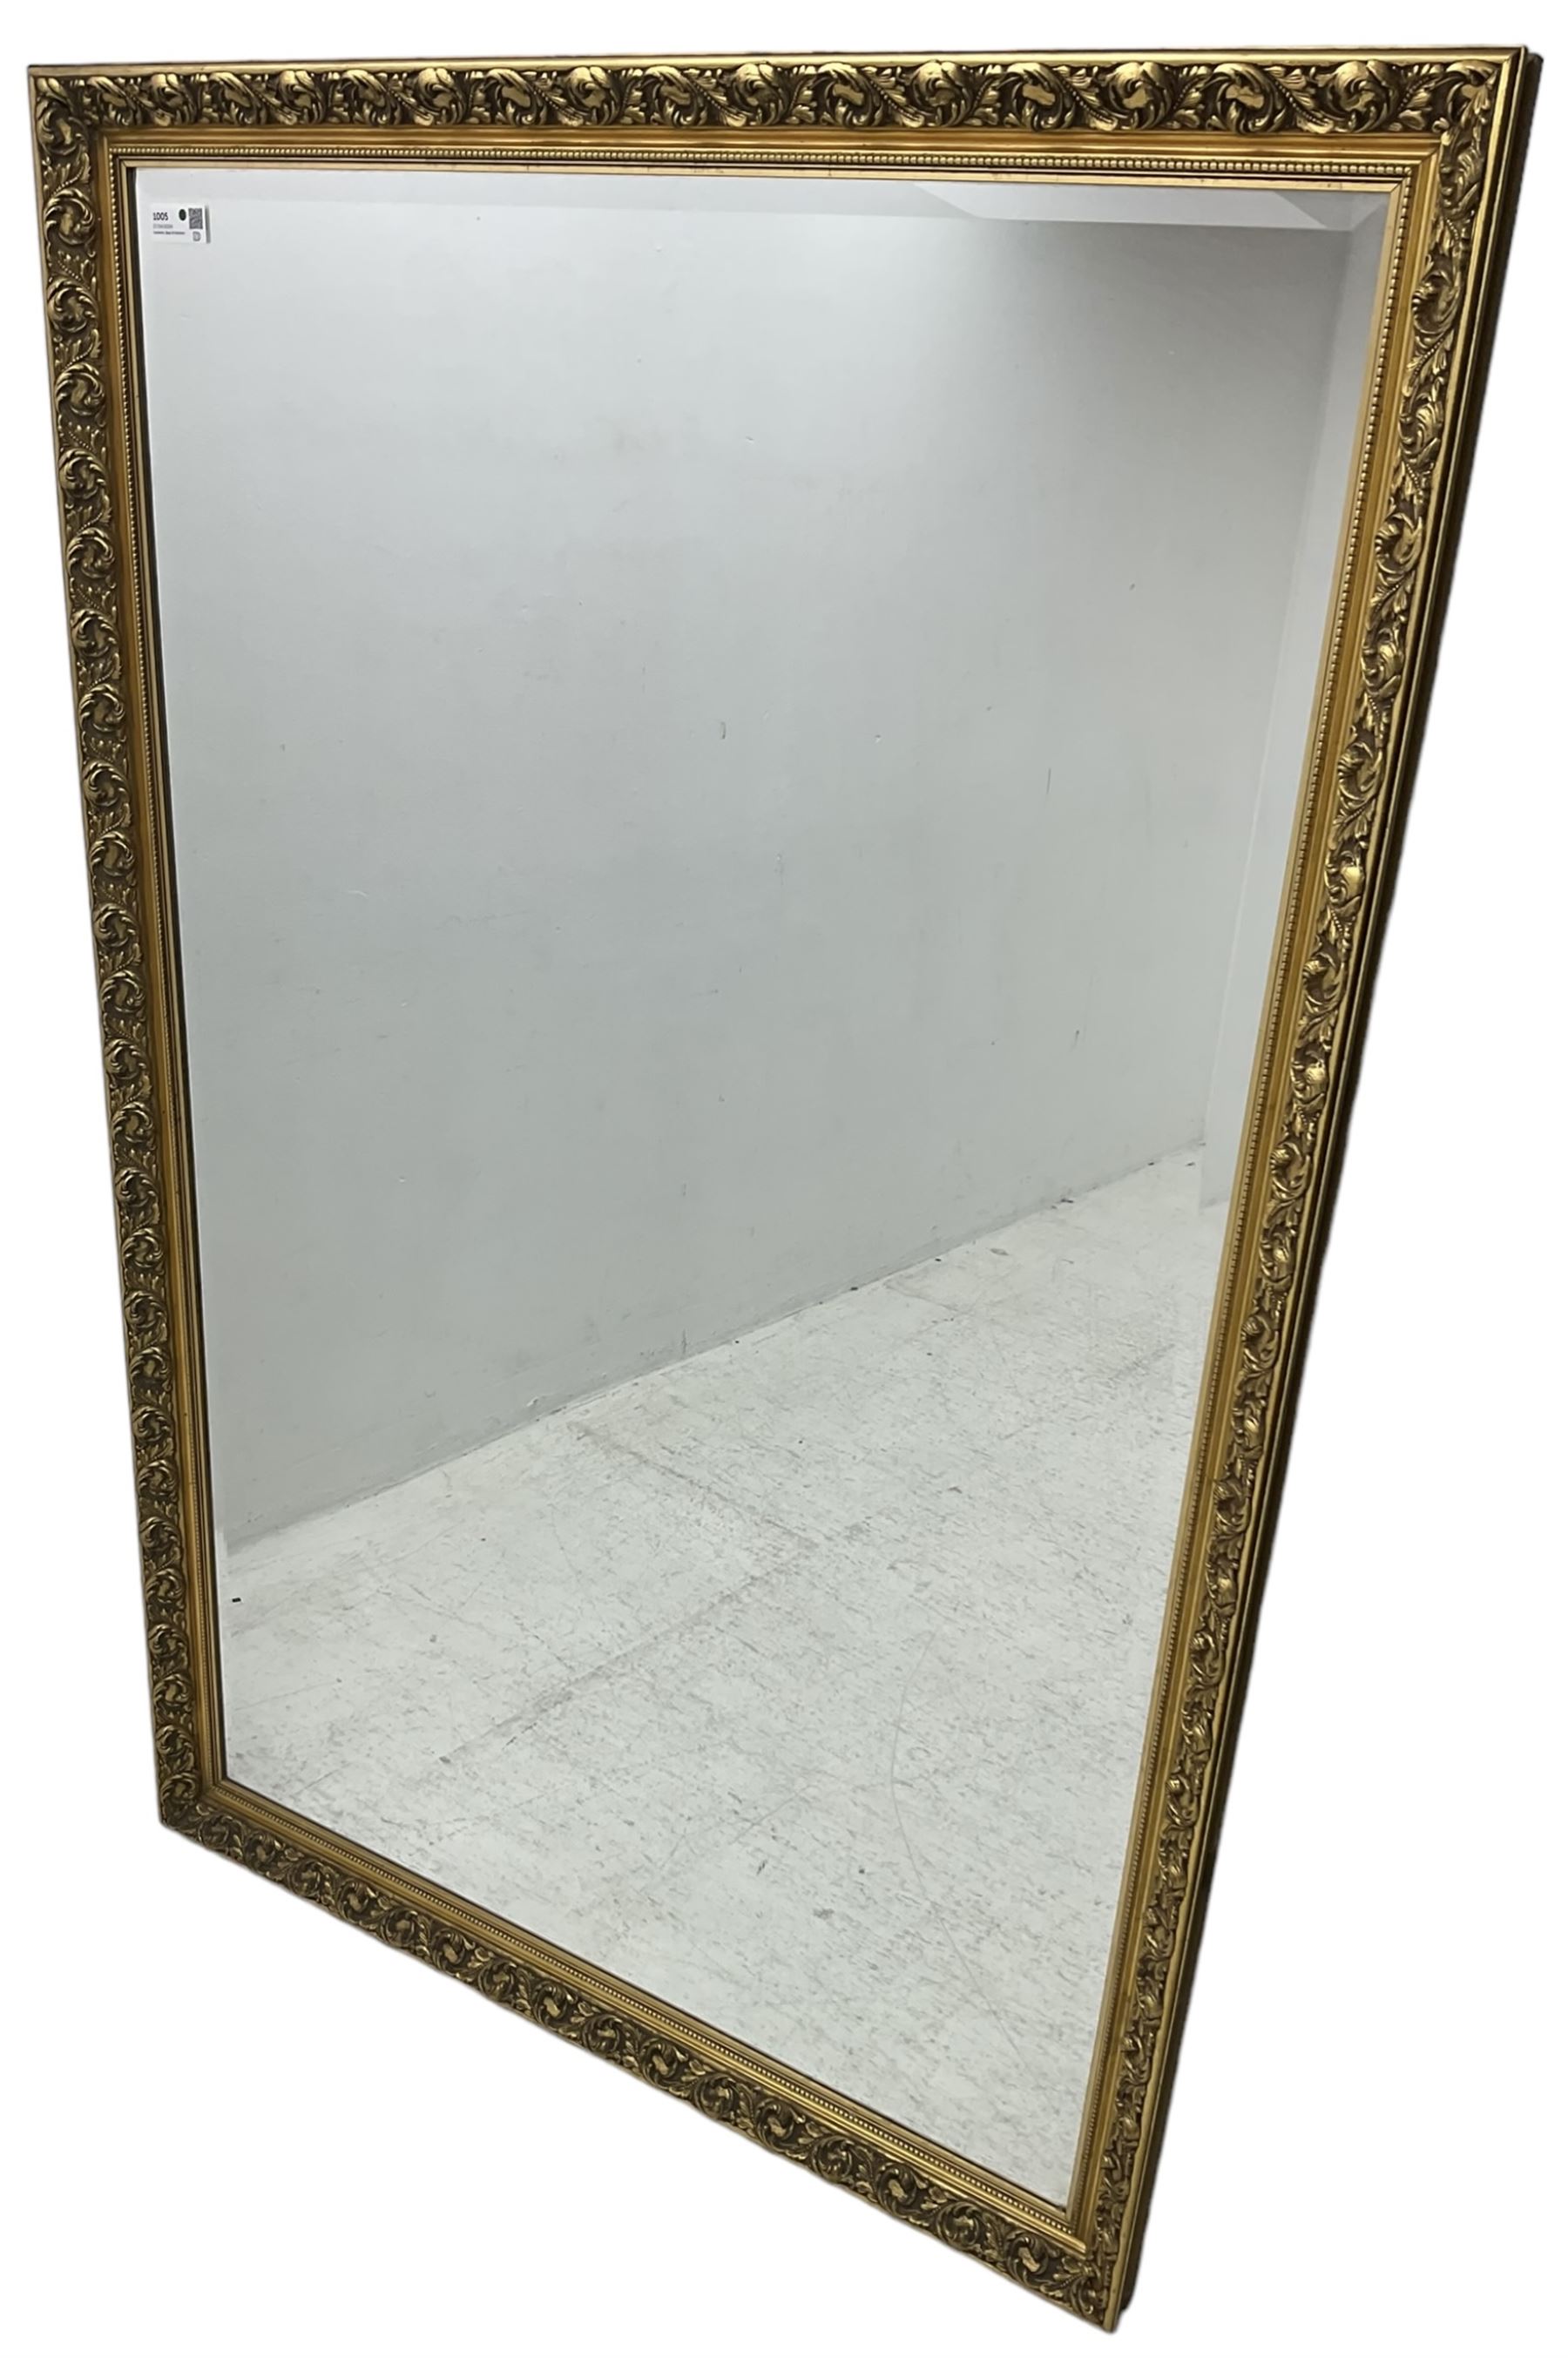 Large rectangular wall mirror - Image 2 of 4